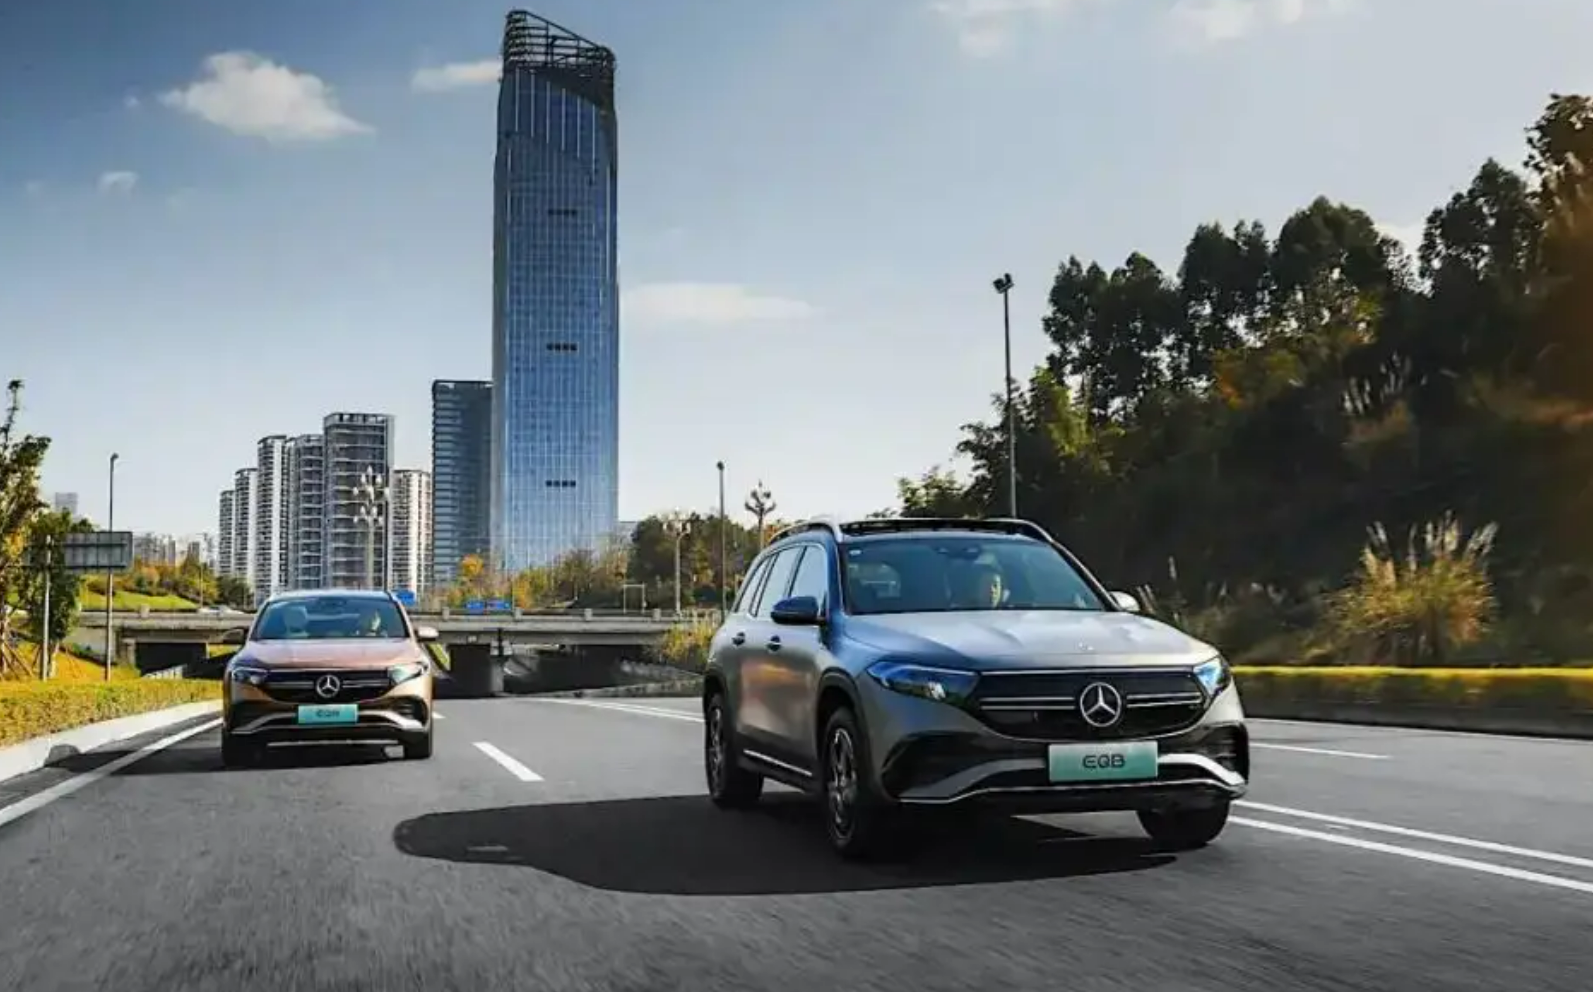 The world’s first Mercedes-EQ dealer settled in Yokohama, Japan